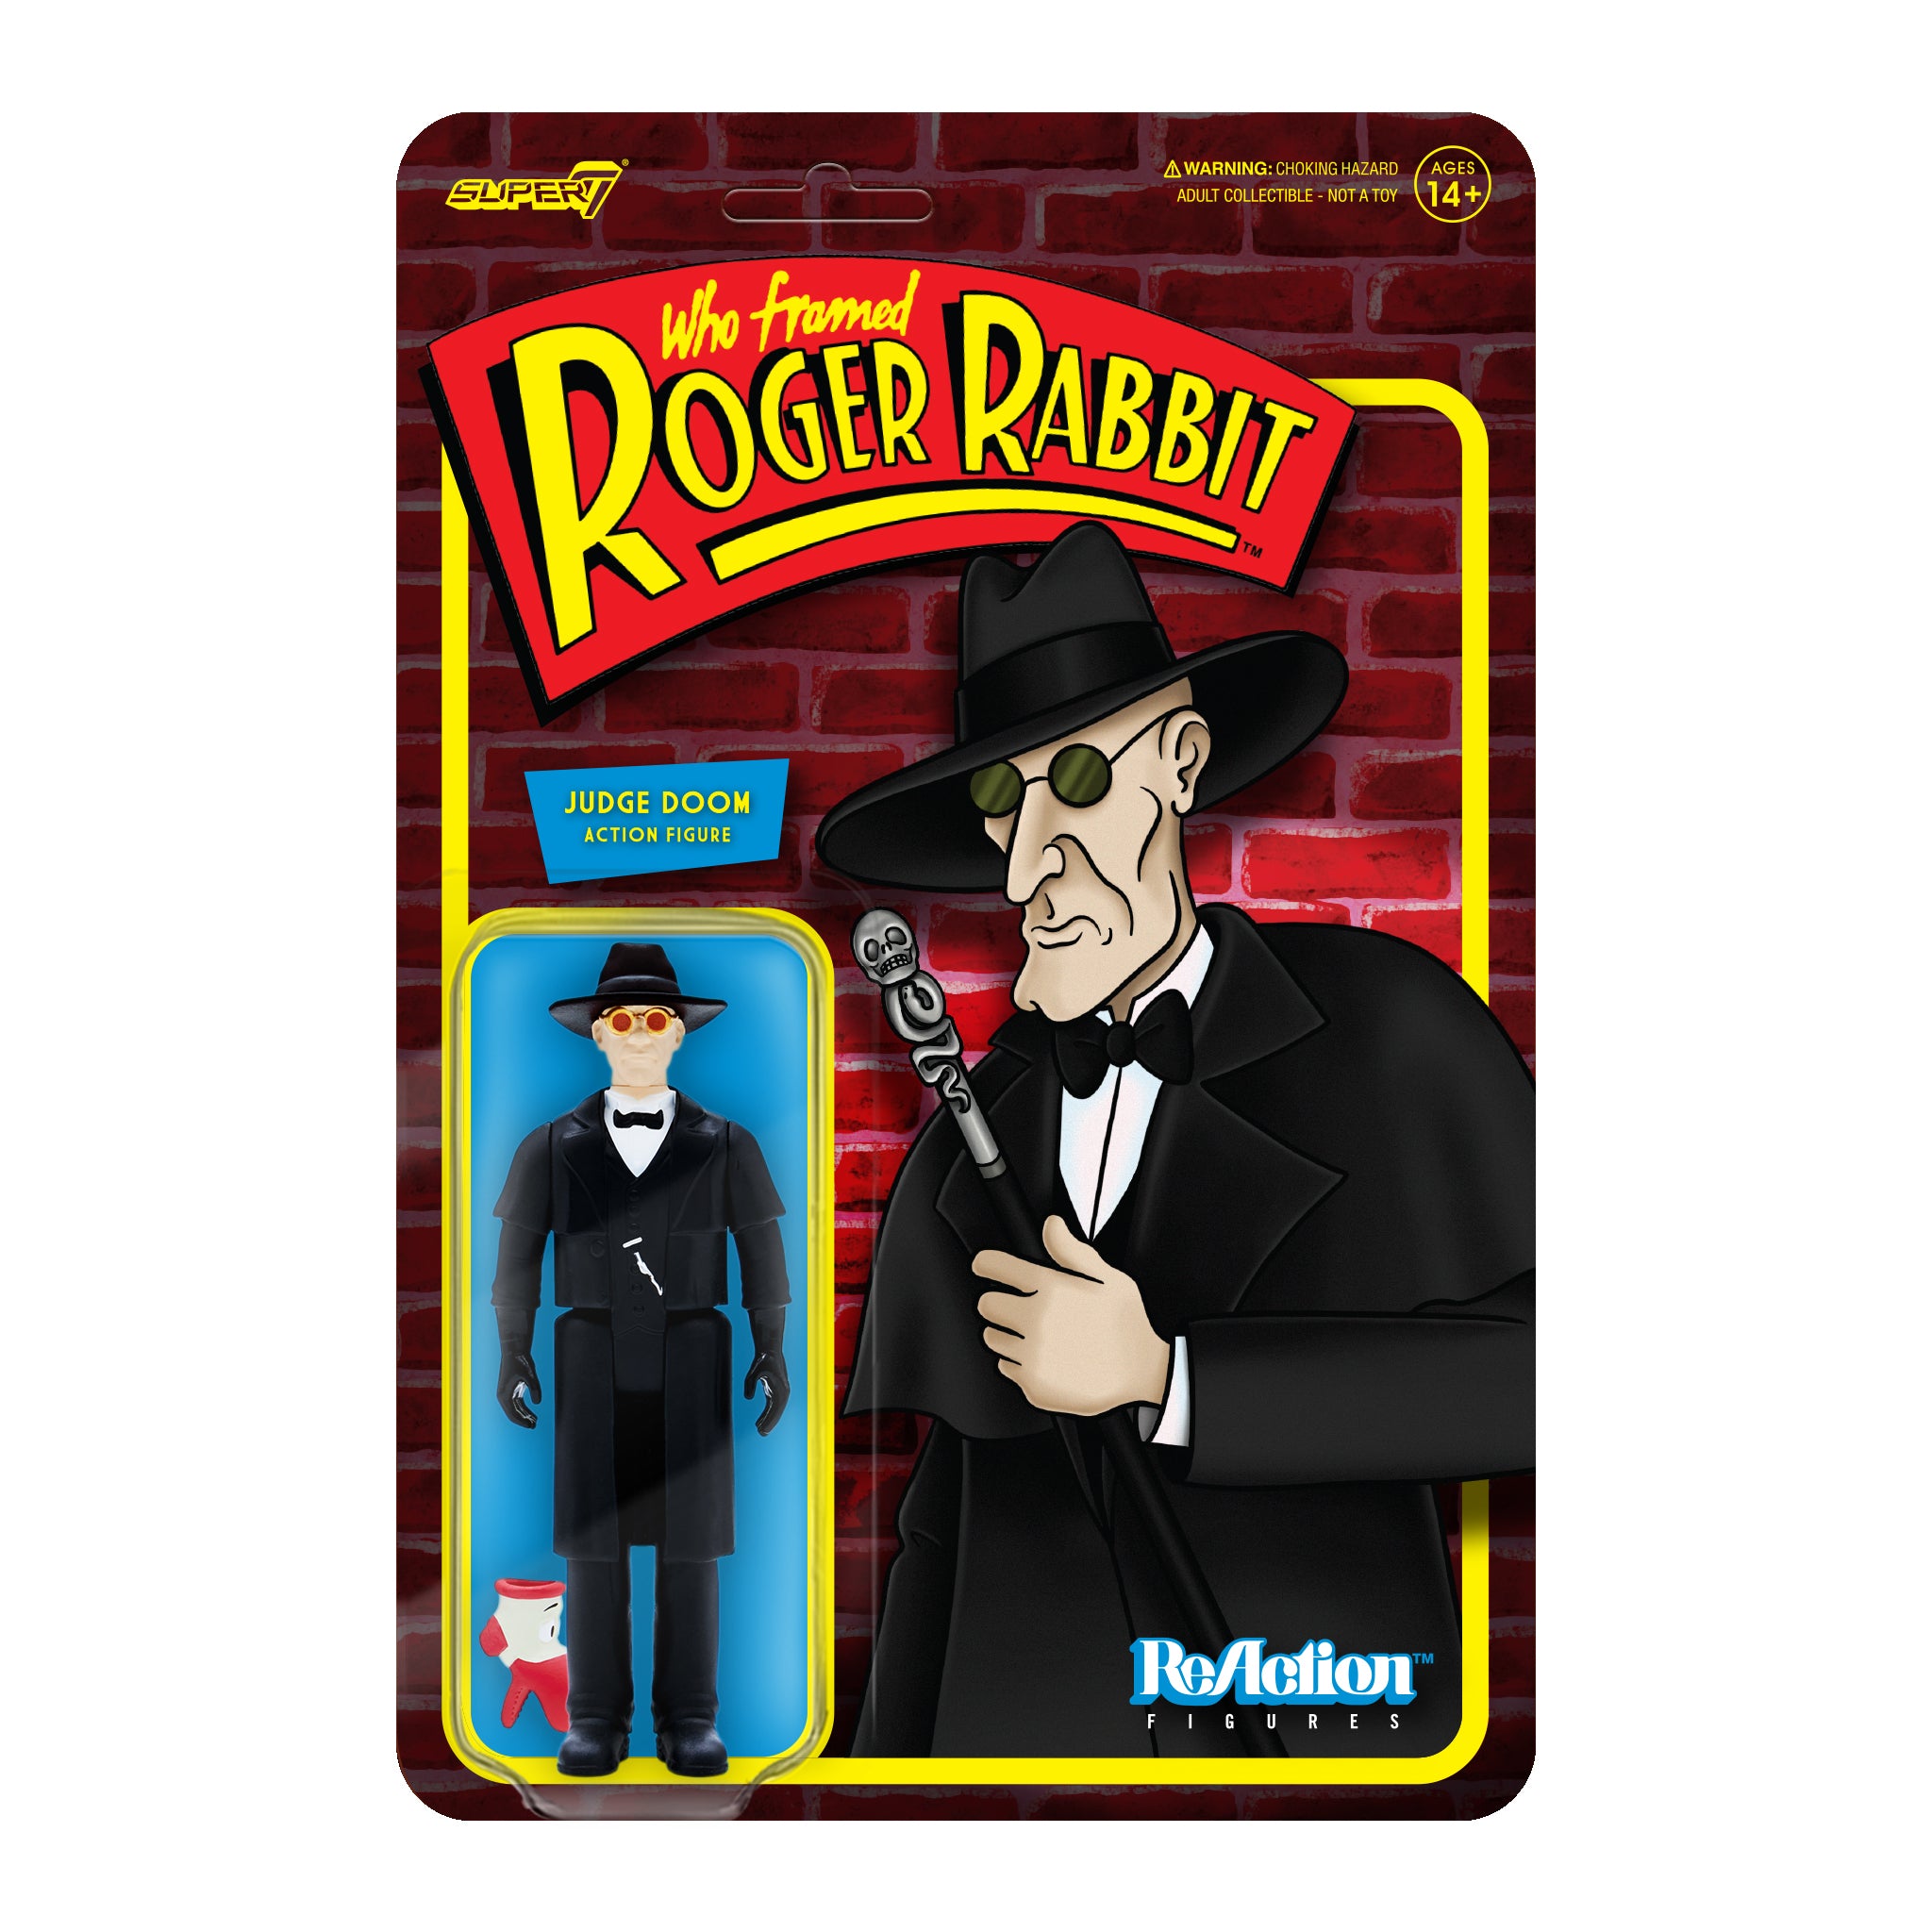 Who Framed Roger Rabbit ReAction Figure Wave 1 - Judge Doom